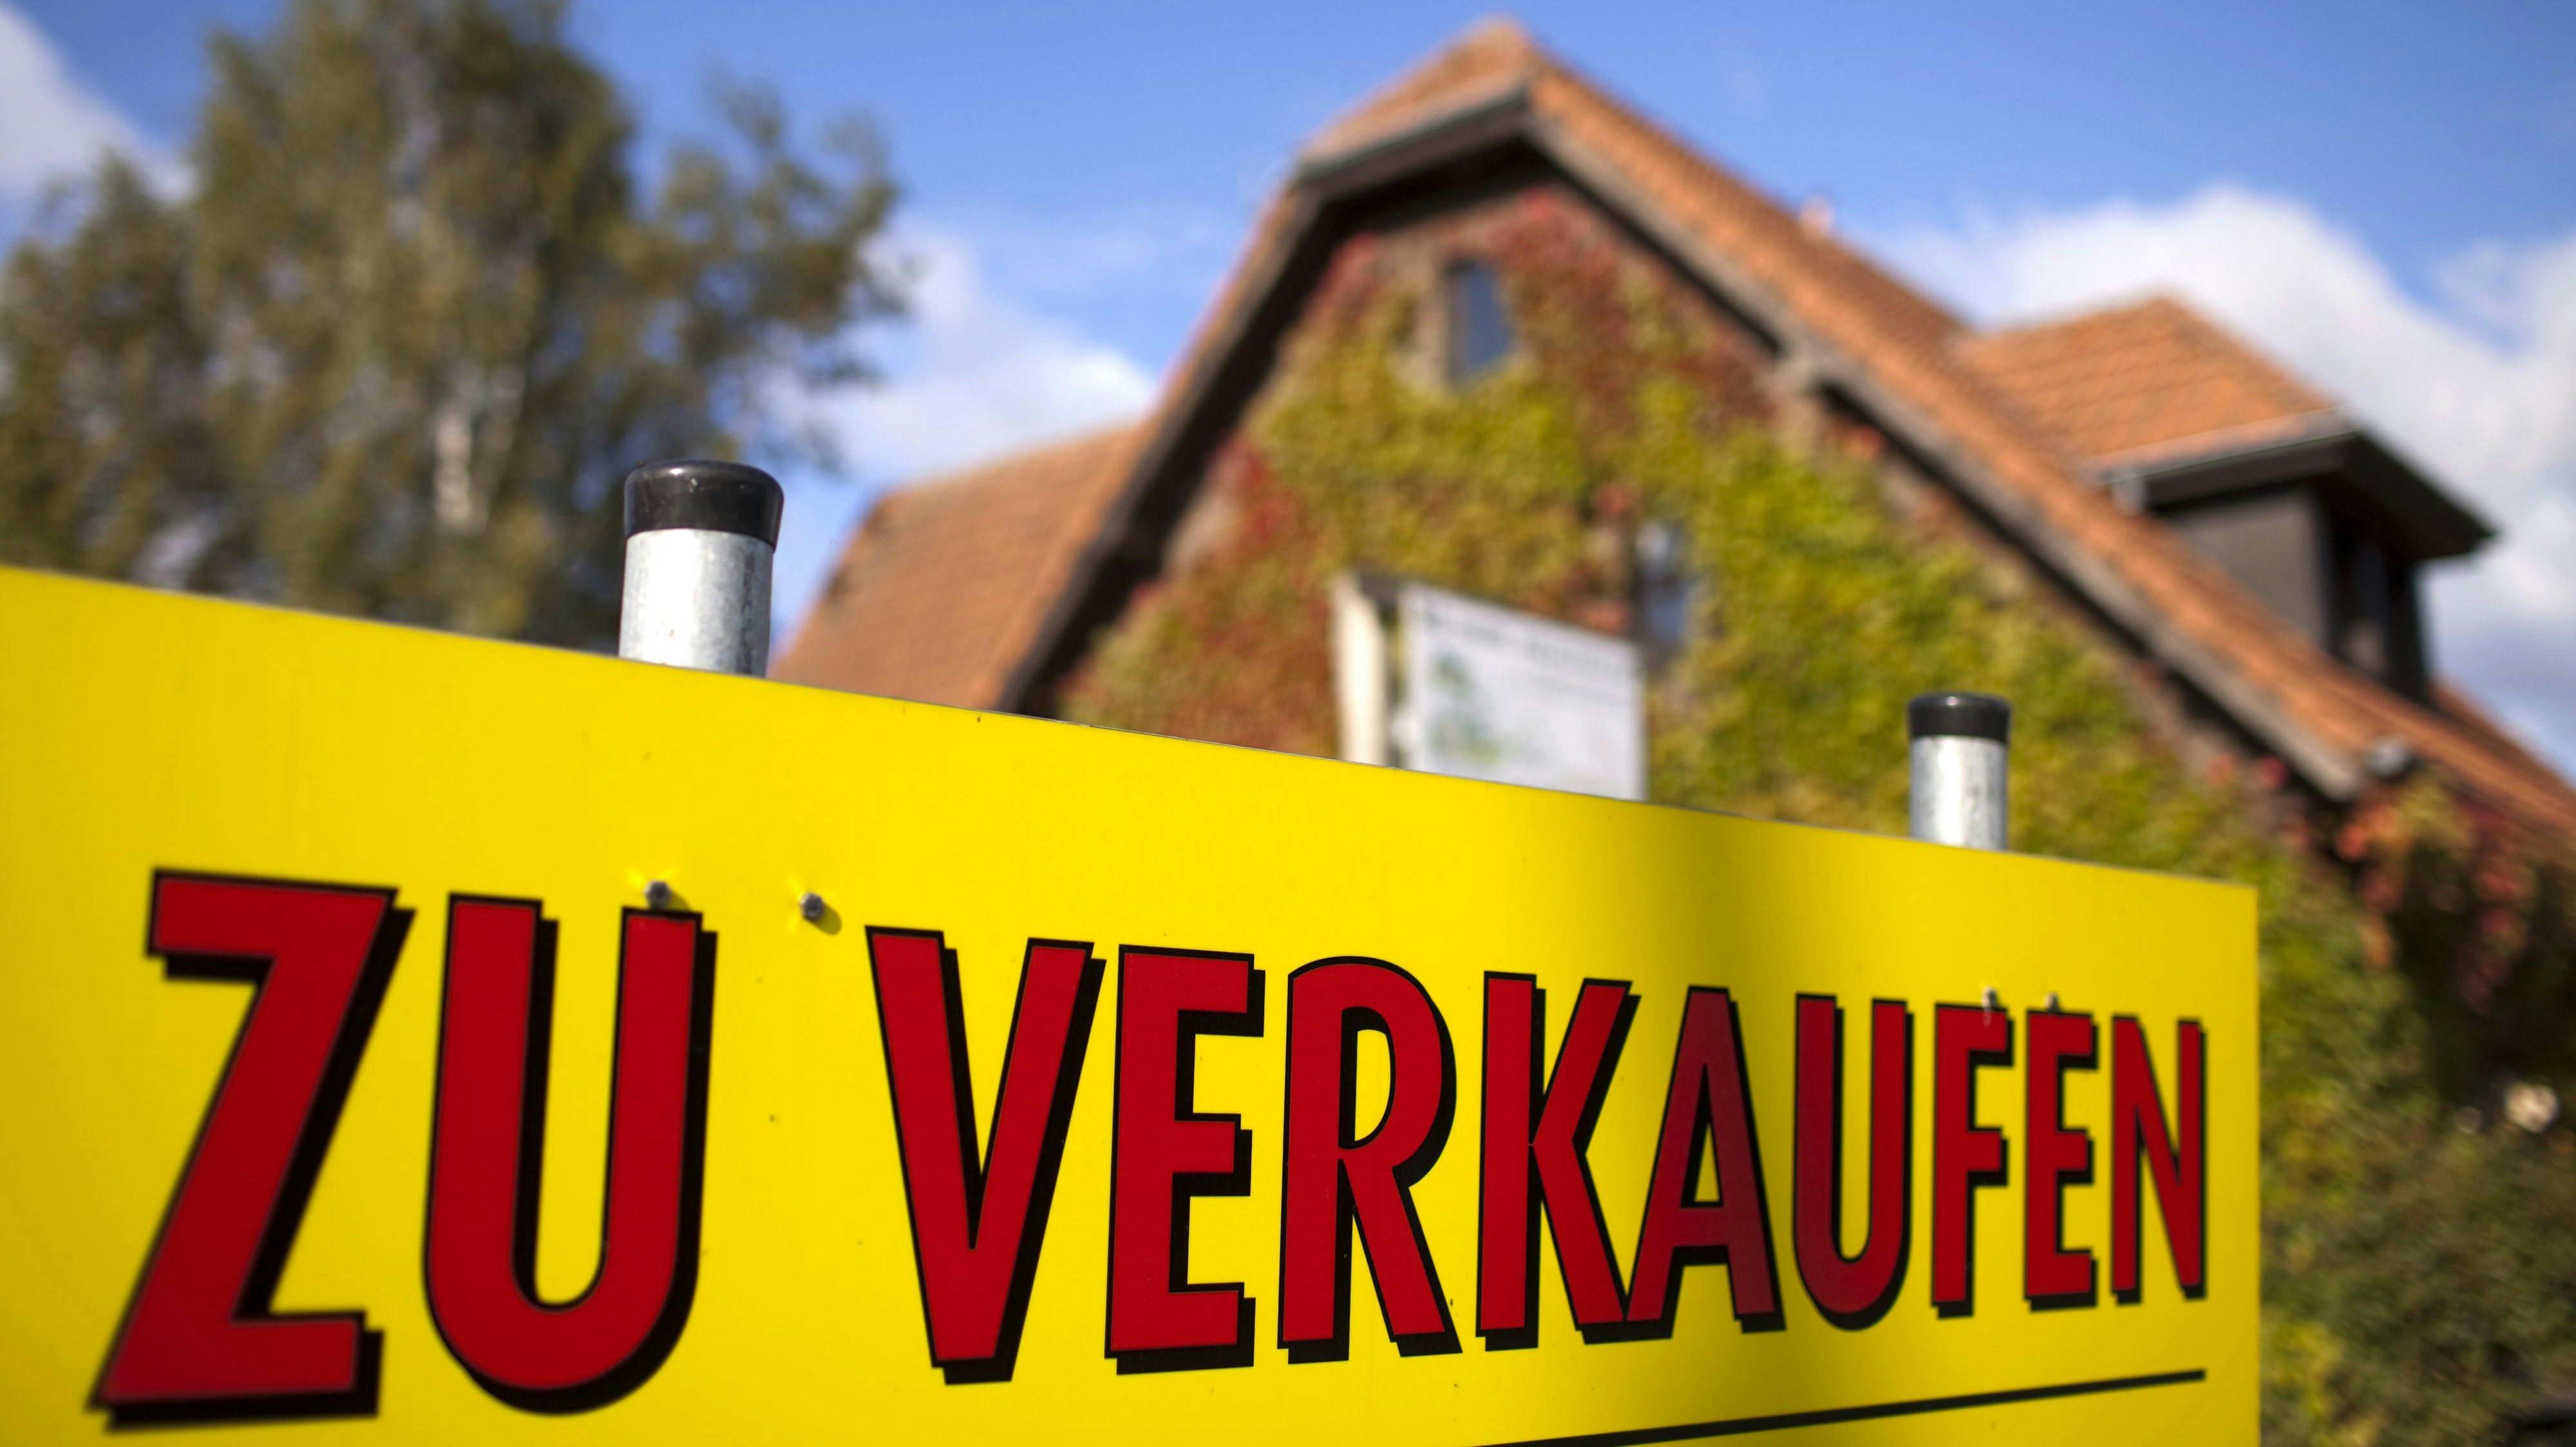 Hohe Preise lassen sich in Südoldenburg weiterhin mit dem Verkauf von gebrauchten Eigenheimen erzielen. Foto: dpa/Burgi